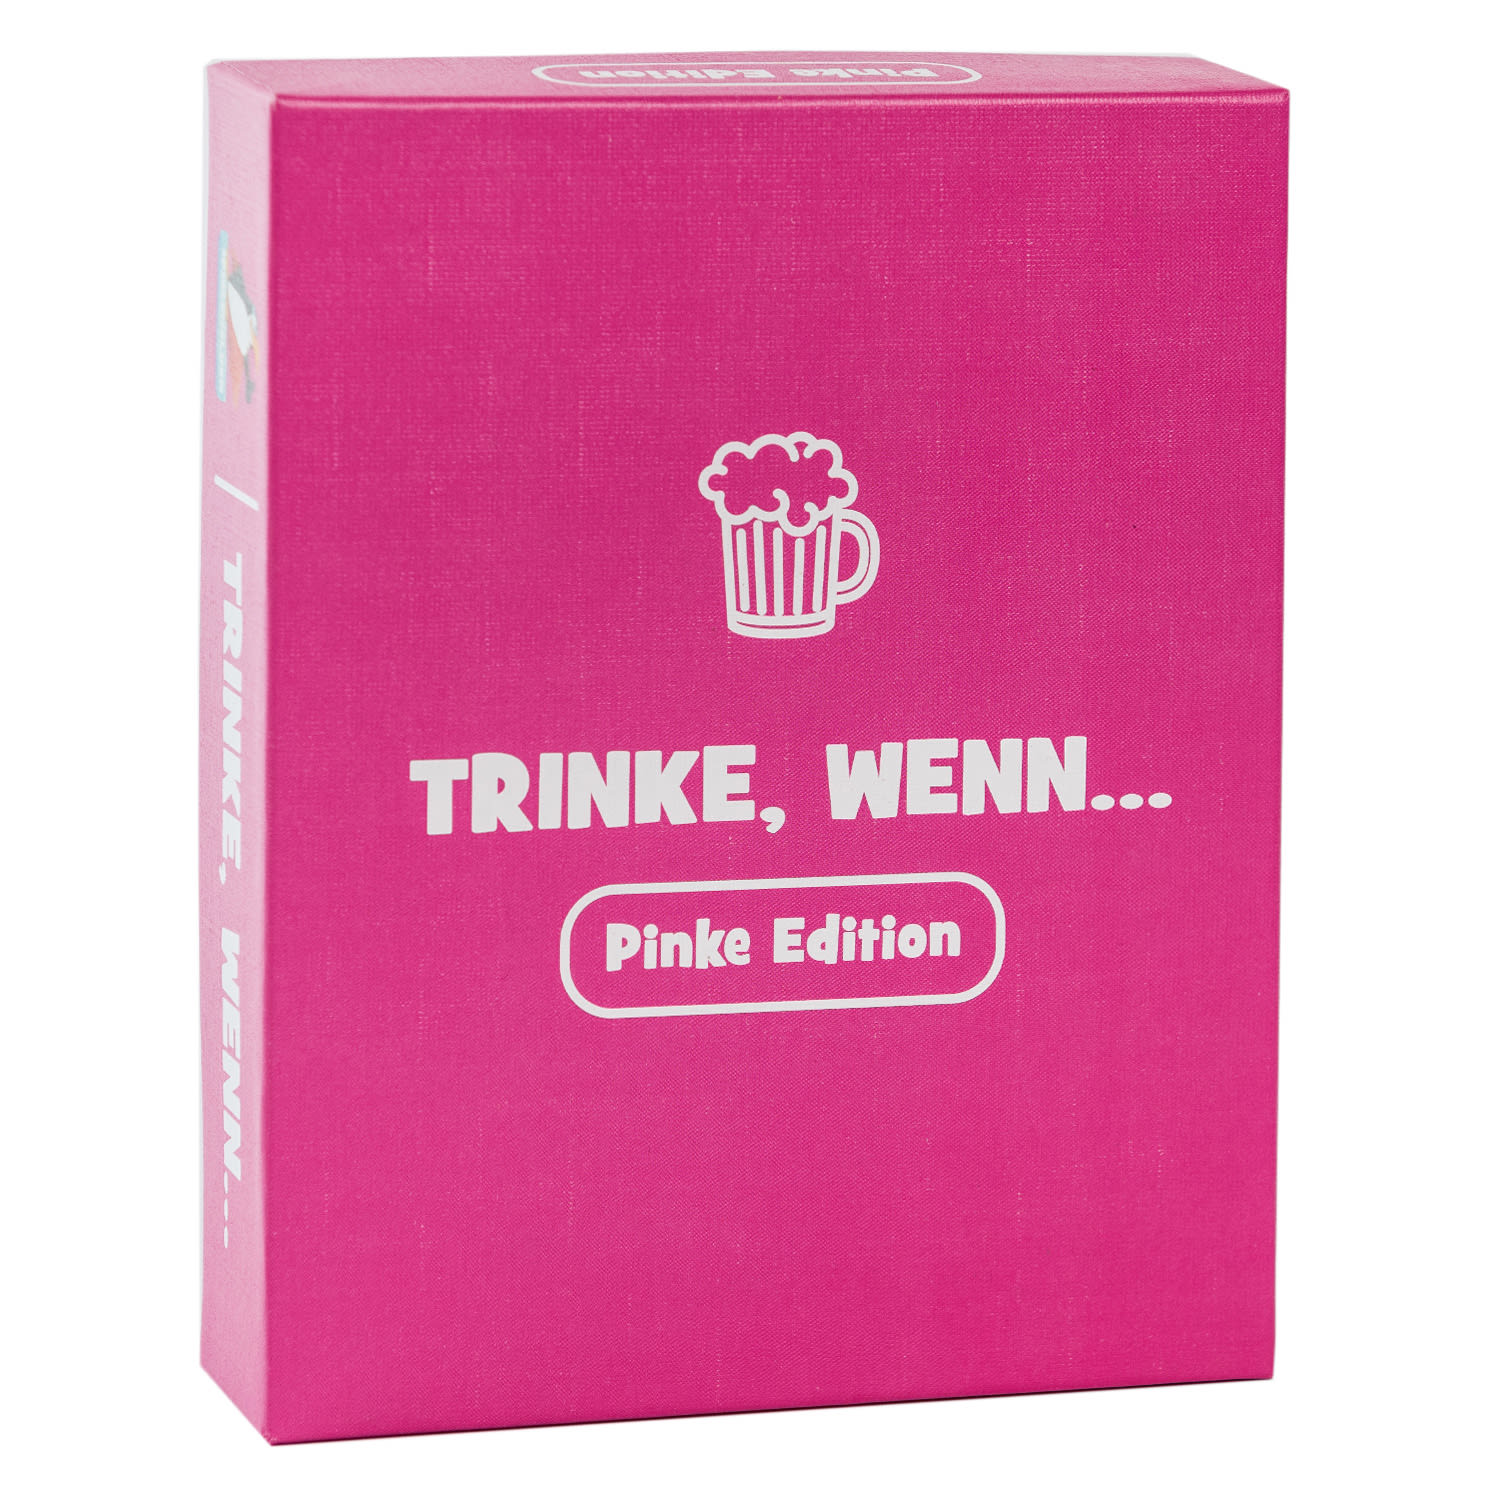 Spielehelden Trinke wenn... Pinke Edition Joc de băut 100+ întrebări Număr de jucători: 2+ Vârstă: de la 18 ani în sus